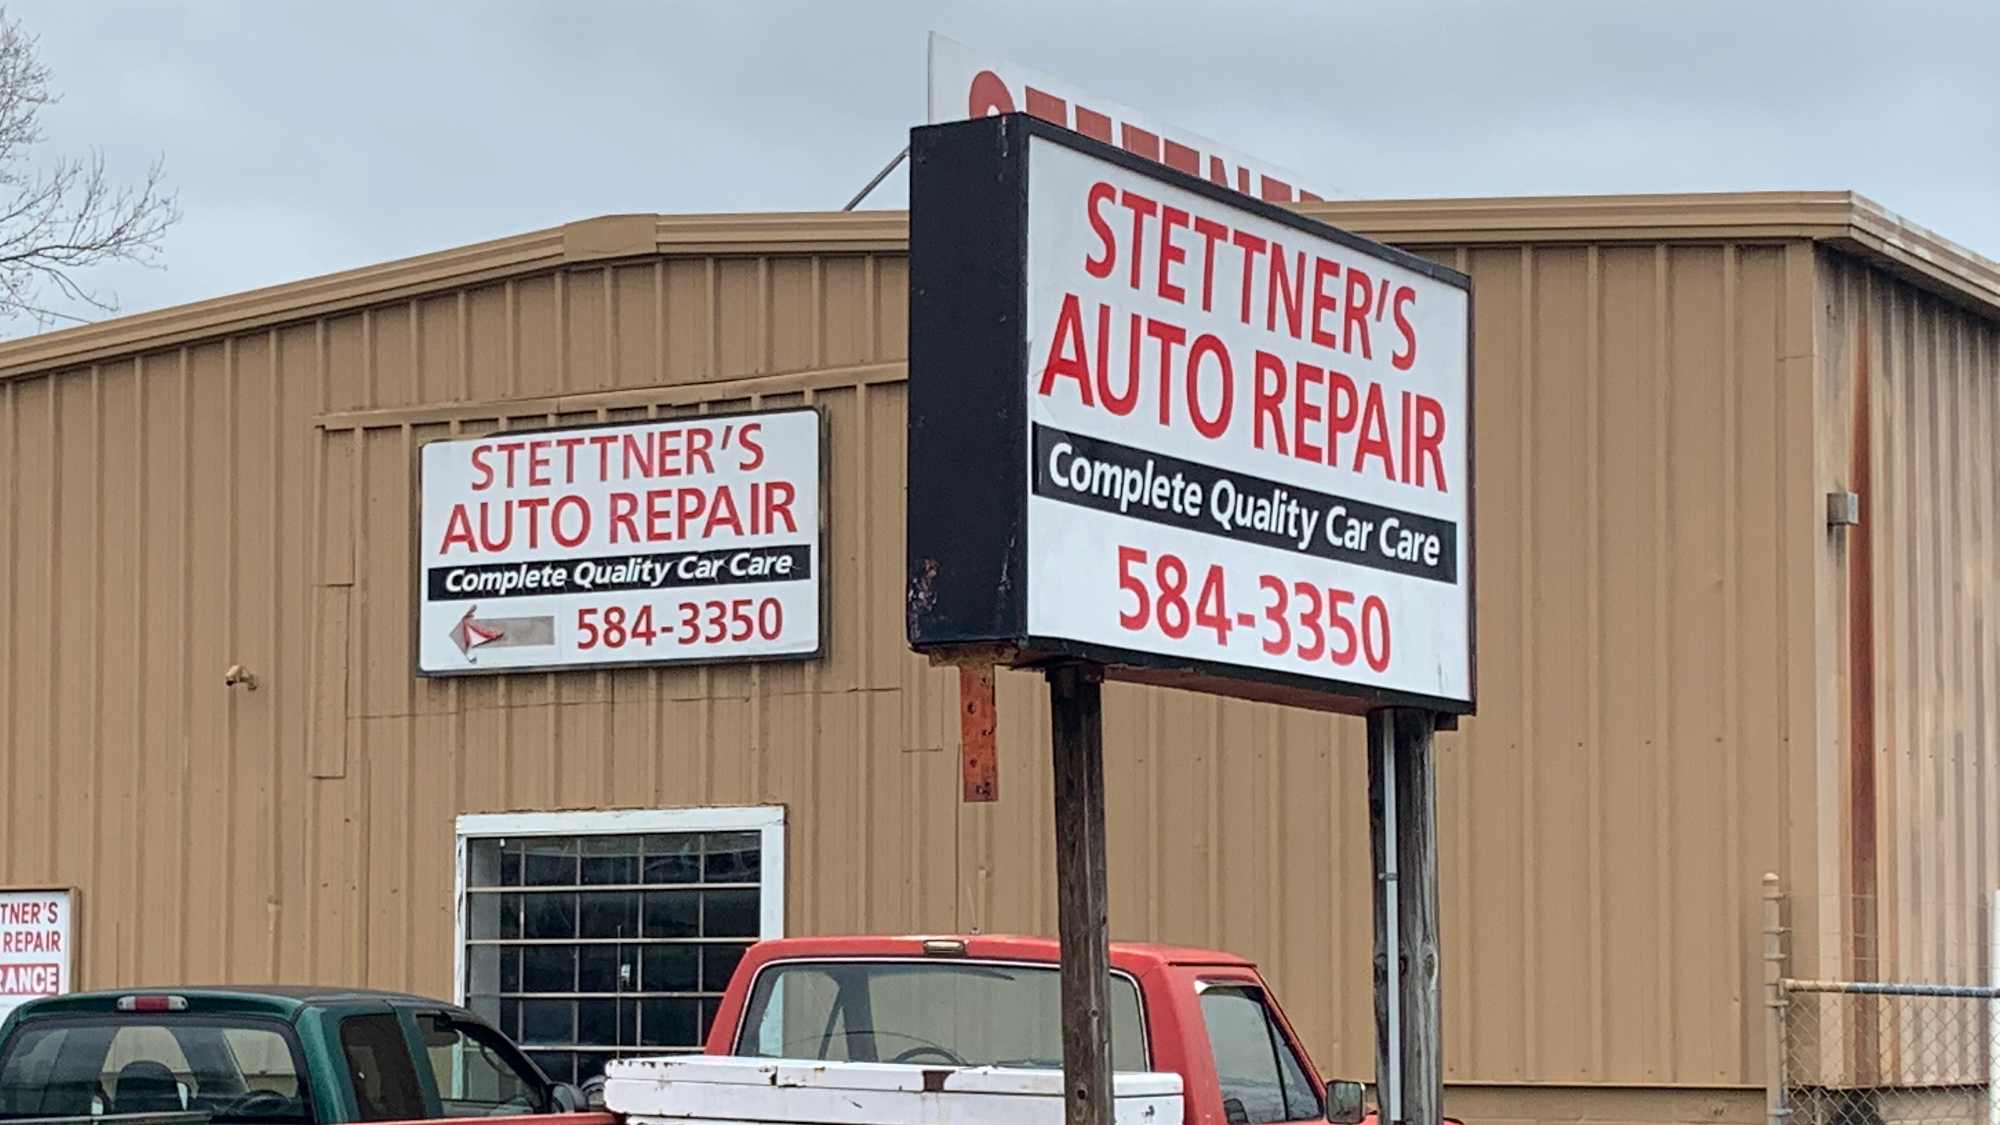 Stettners Auto Repair